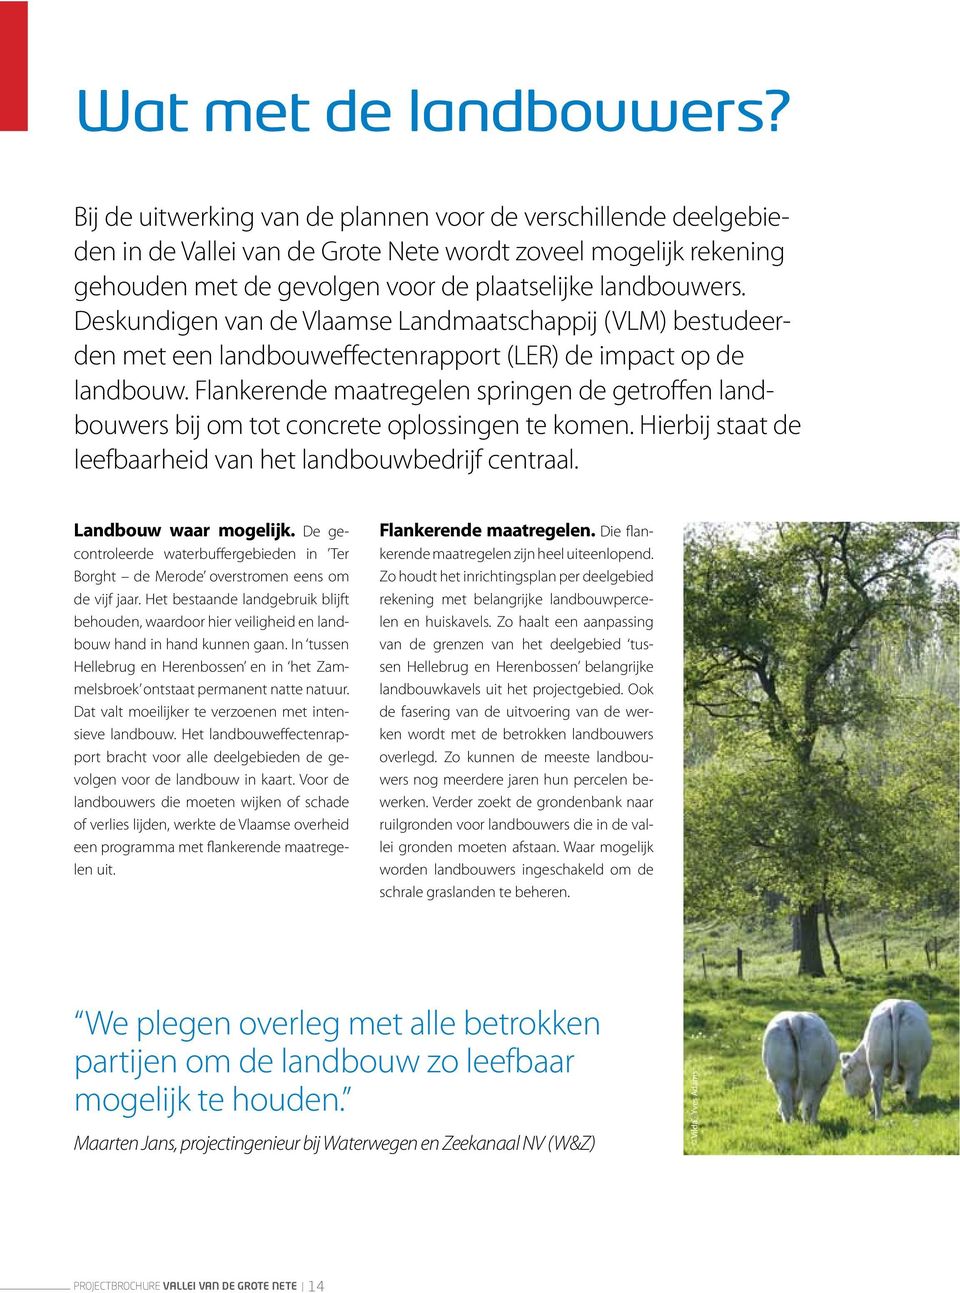 Hierbij staat leefbaarheid landbouwbedrijf centraal. Landbouw waar mogelijk. De gecontroleer warbuffergebien in Ter Borght Mero overstromen eens om vijf jaar.